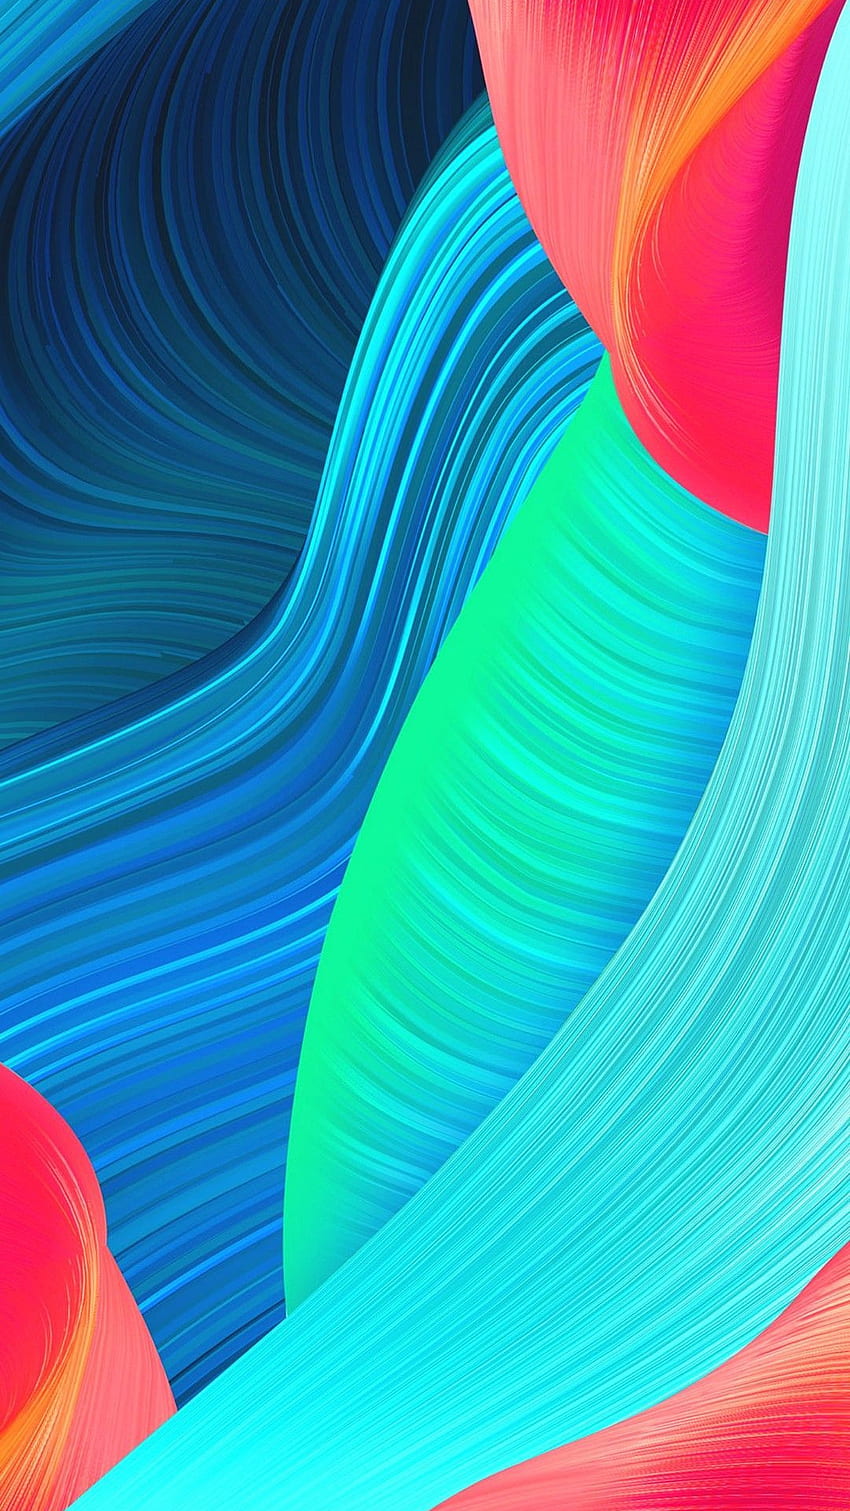 Oppo Colorful Wallpaper sẽ khiến bạn phải nhìn ngắm hoài với sắc màu tươi sáng, tràn đầy năng lượng. Tạo nên sự khác biệt cho chiếc điện thoại Oppo của bạn với những bức ảnh nền này. Hãy ráng chờ đợi hình ảnh liên quan được hiển thị nhé!